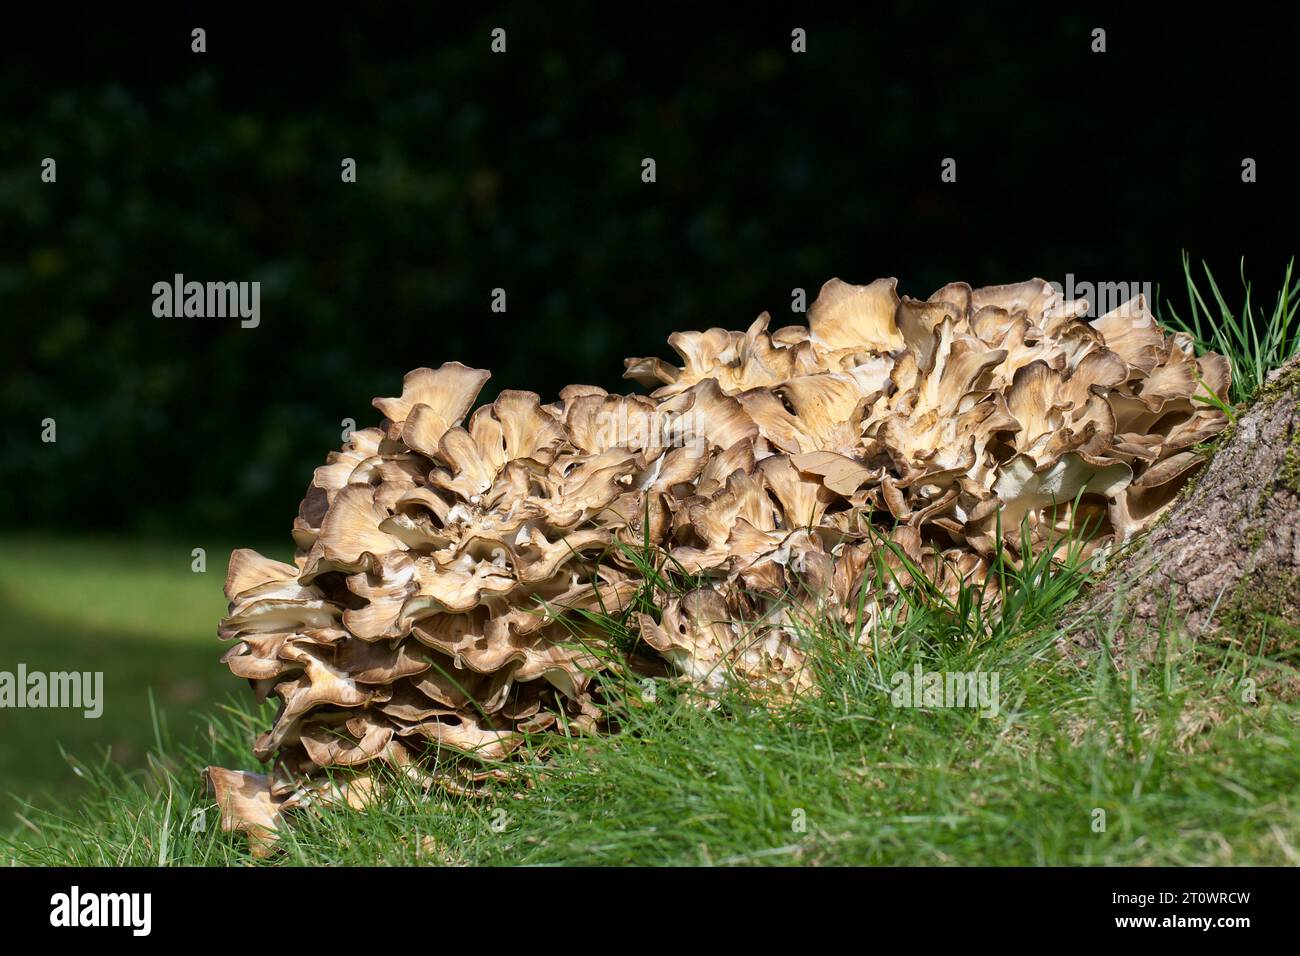 Poule des Bois, Grifola frondosa, parasite fongique des arbres à feuilles larges, en particulier le chêne, est considéré comme l'un des meilleurs champignons comestibles Banque D'Images